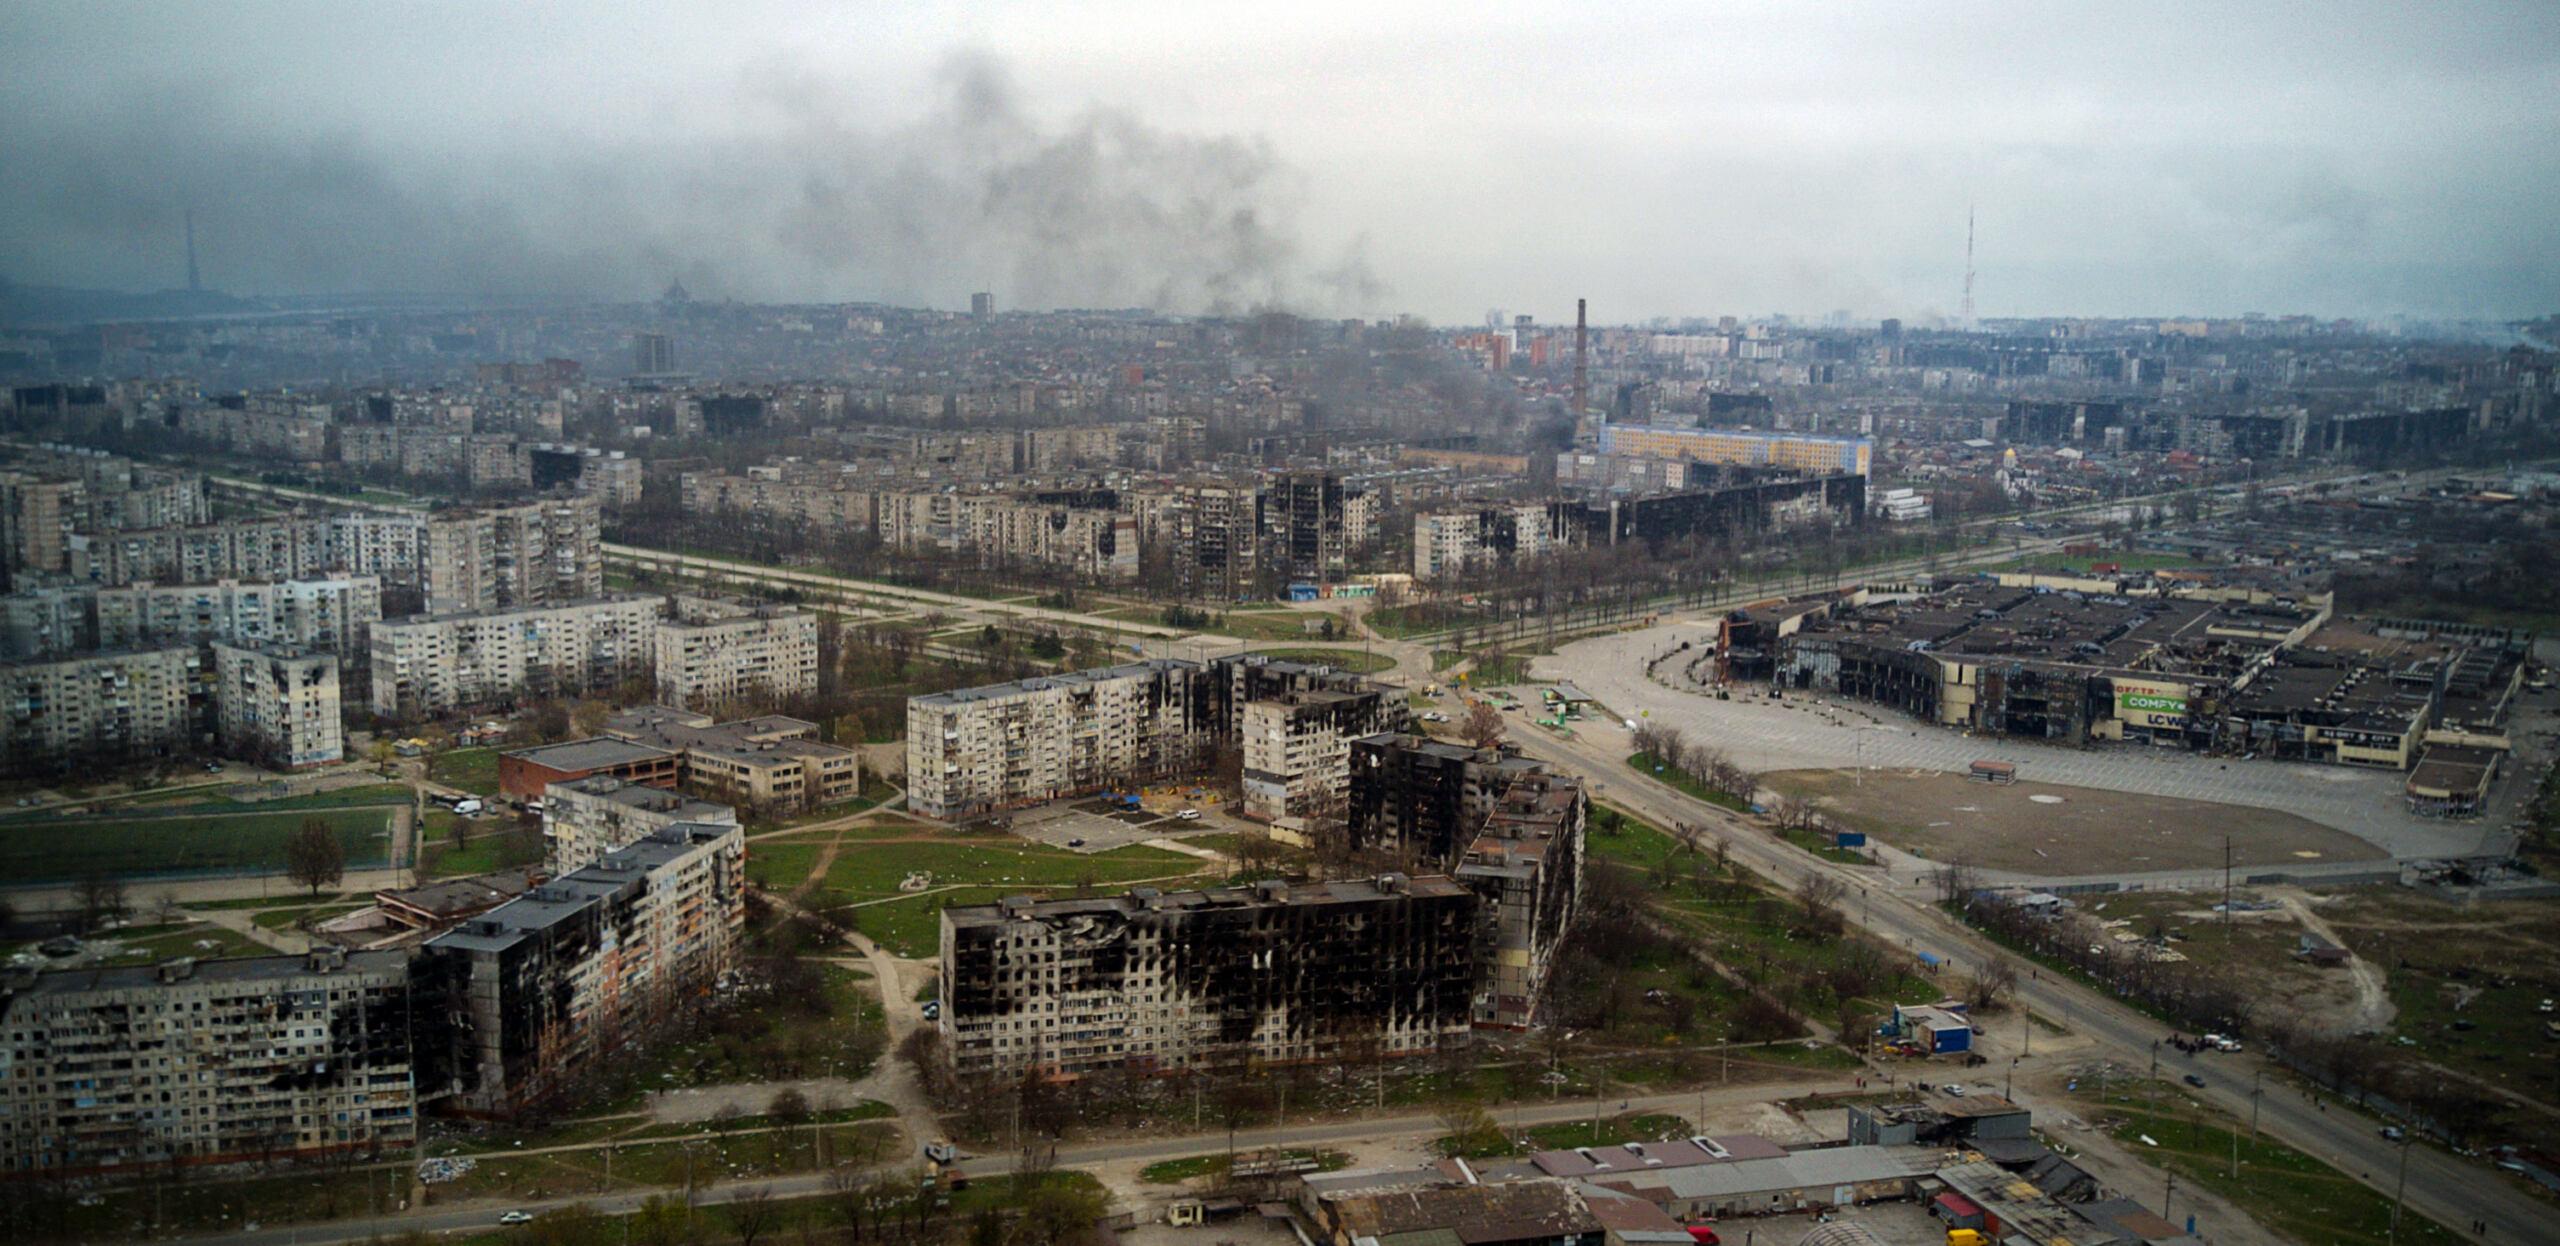 Mariupol, Ukraina, 12.04.2022. Widok zniszczonego miasta z lotu ptaka.